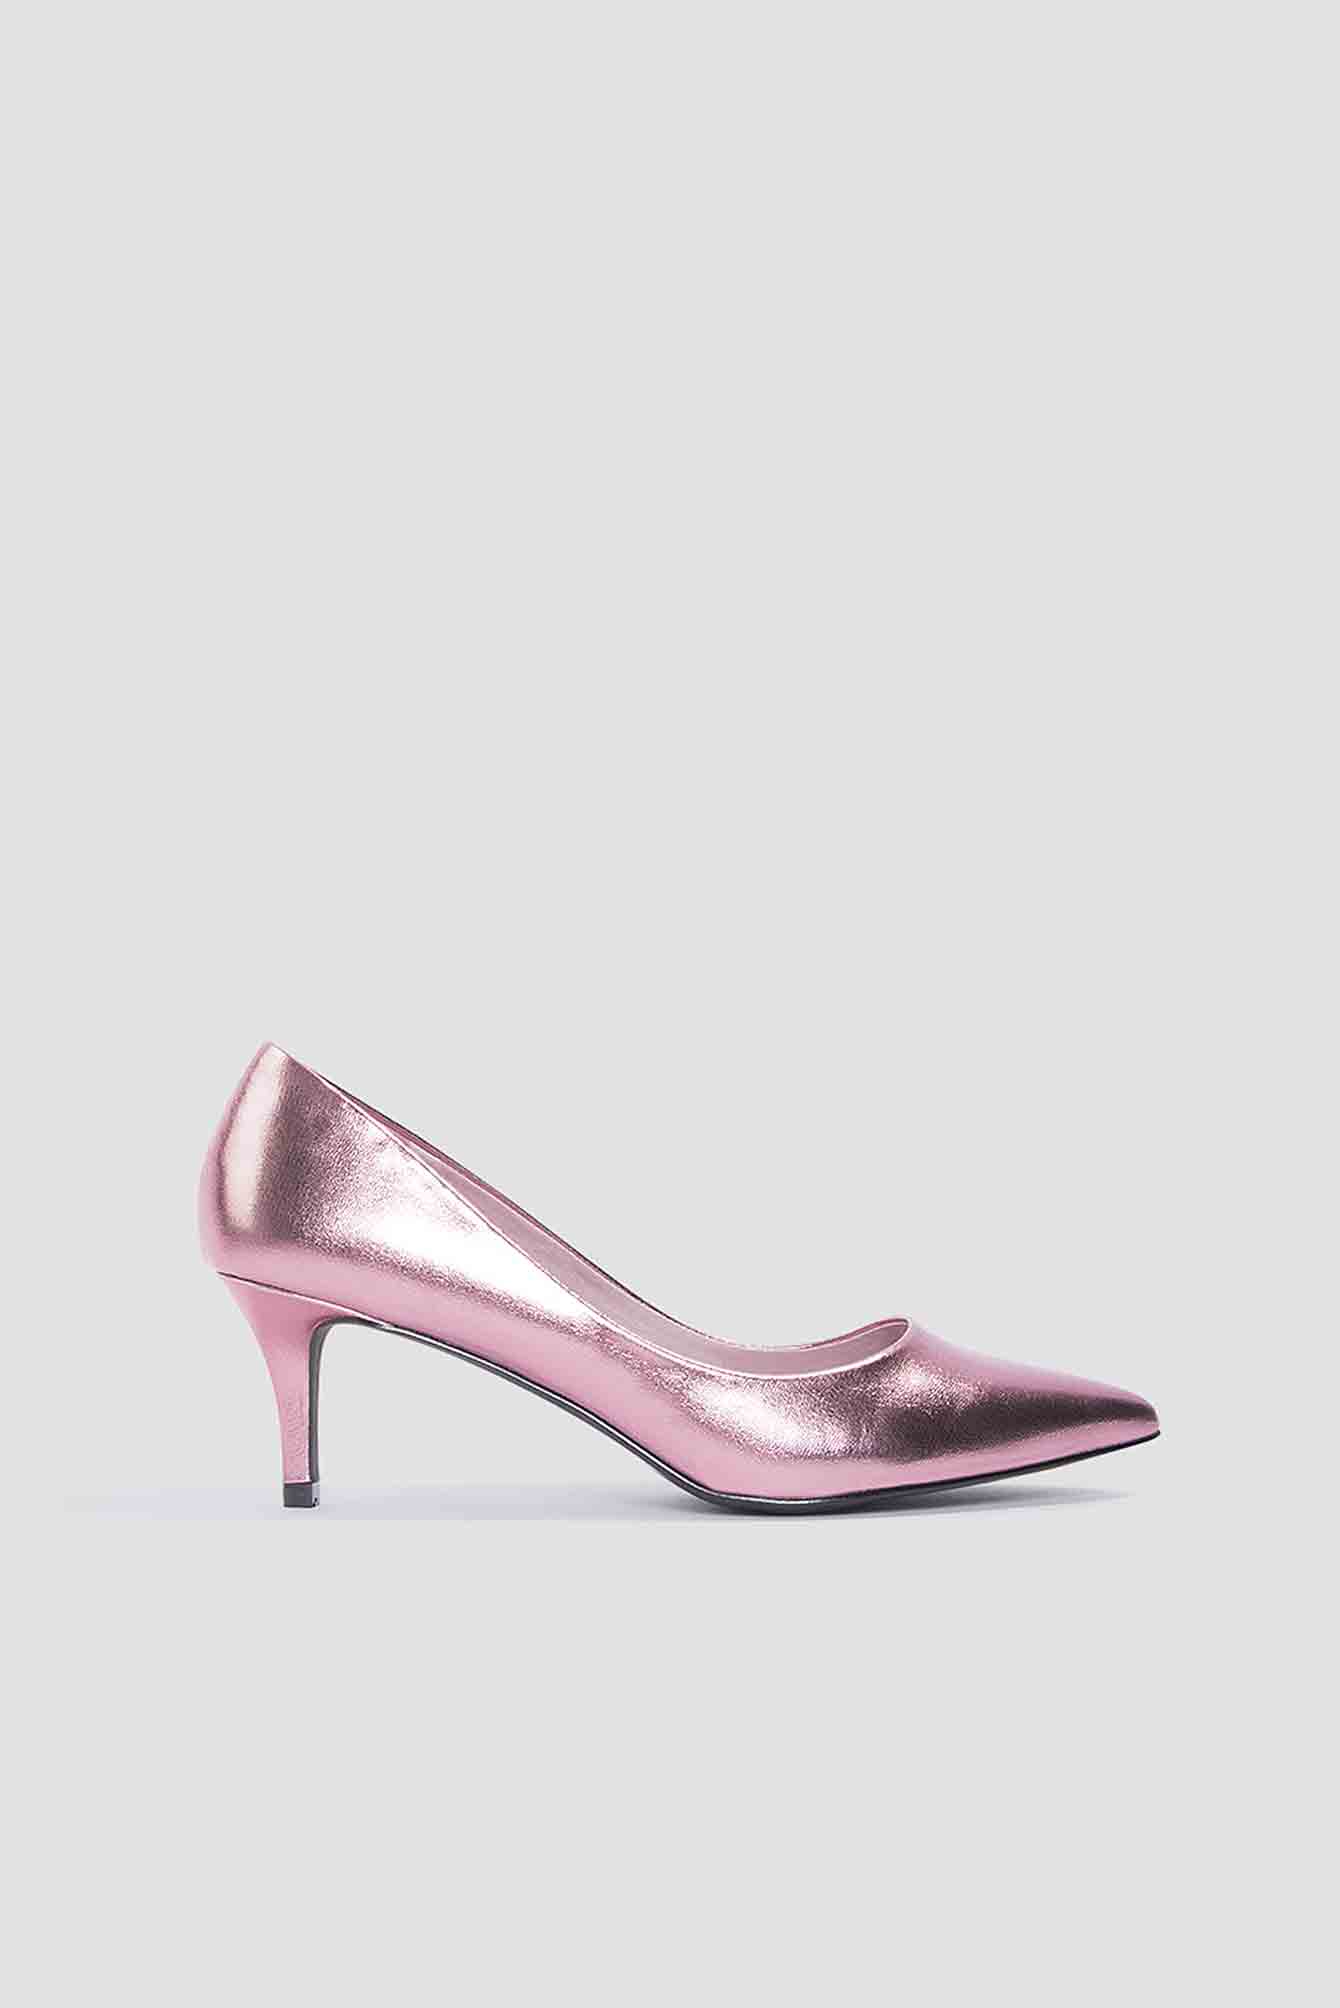 metallic court shoes mid heel